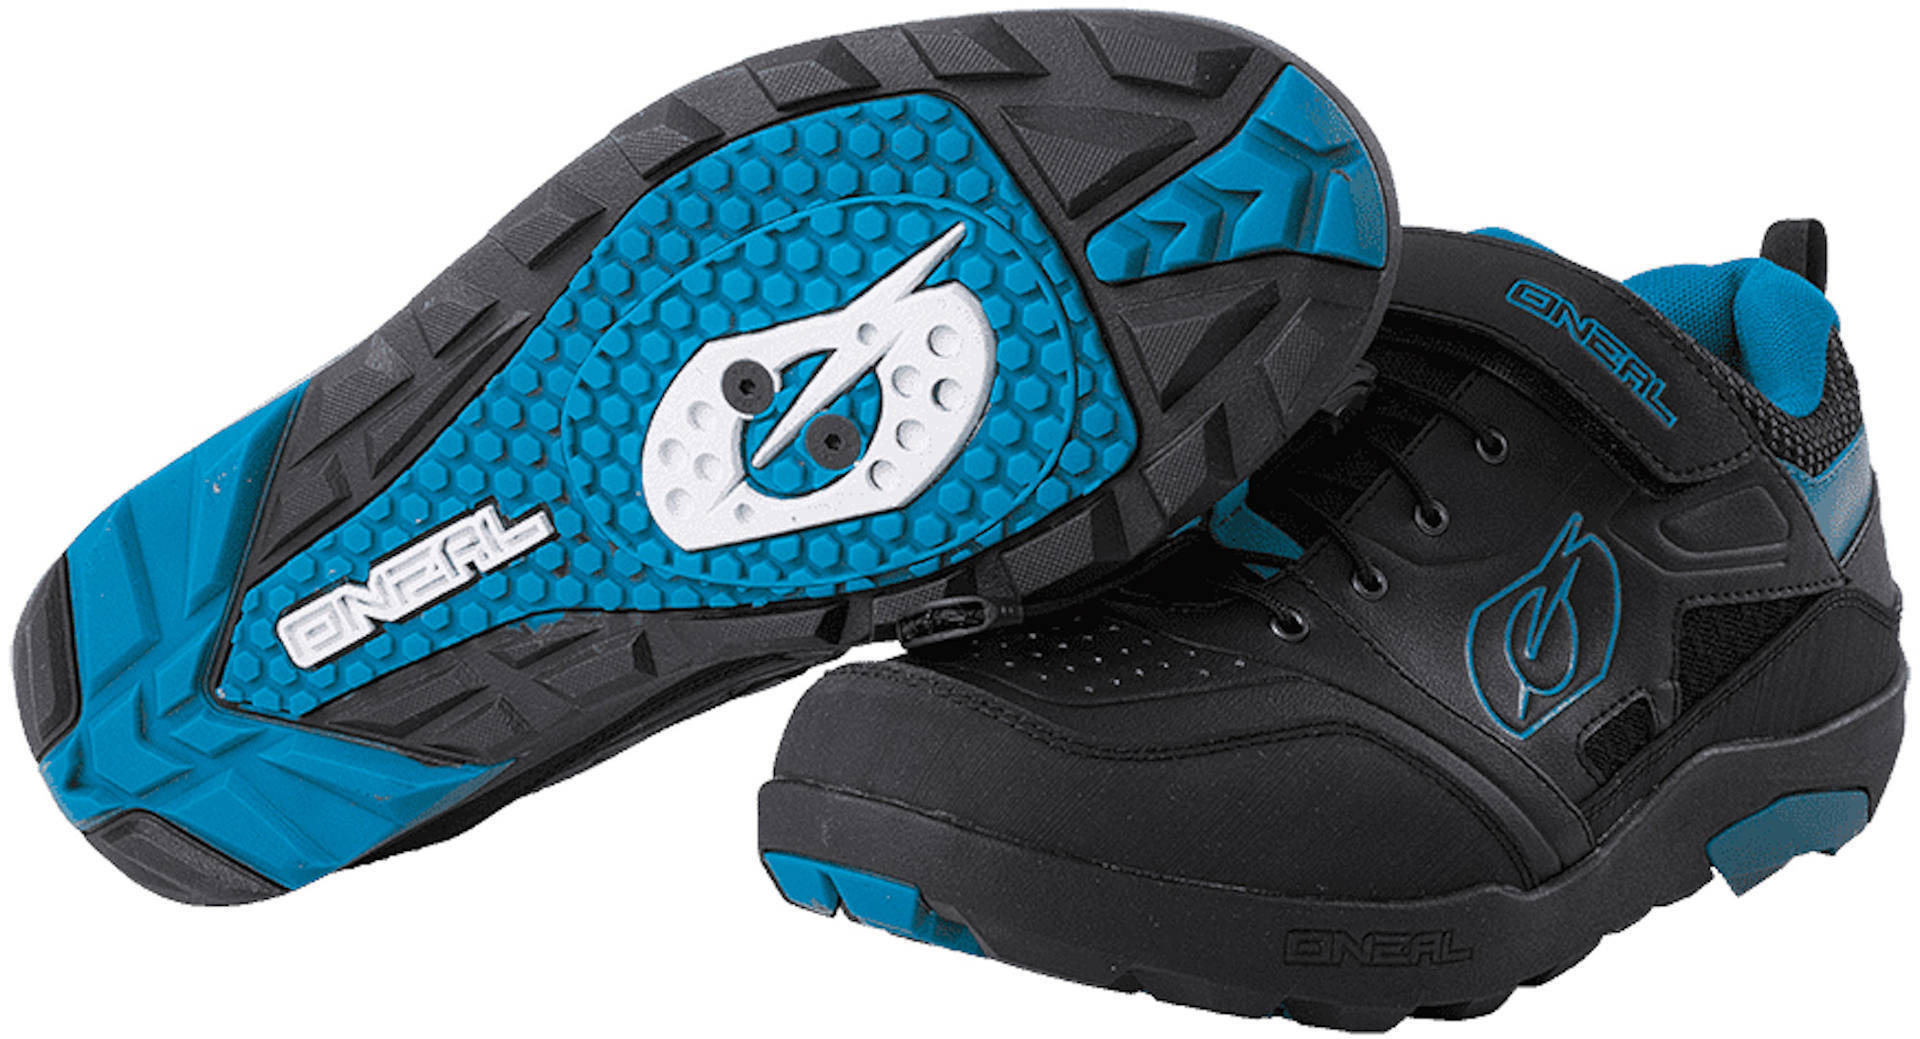 Oneal Traverse SPD Schuhe, schwarz-blau, Größe 46, schwarz-blau, Größe 46